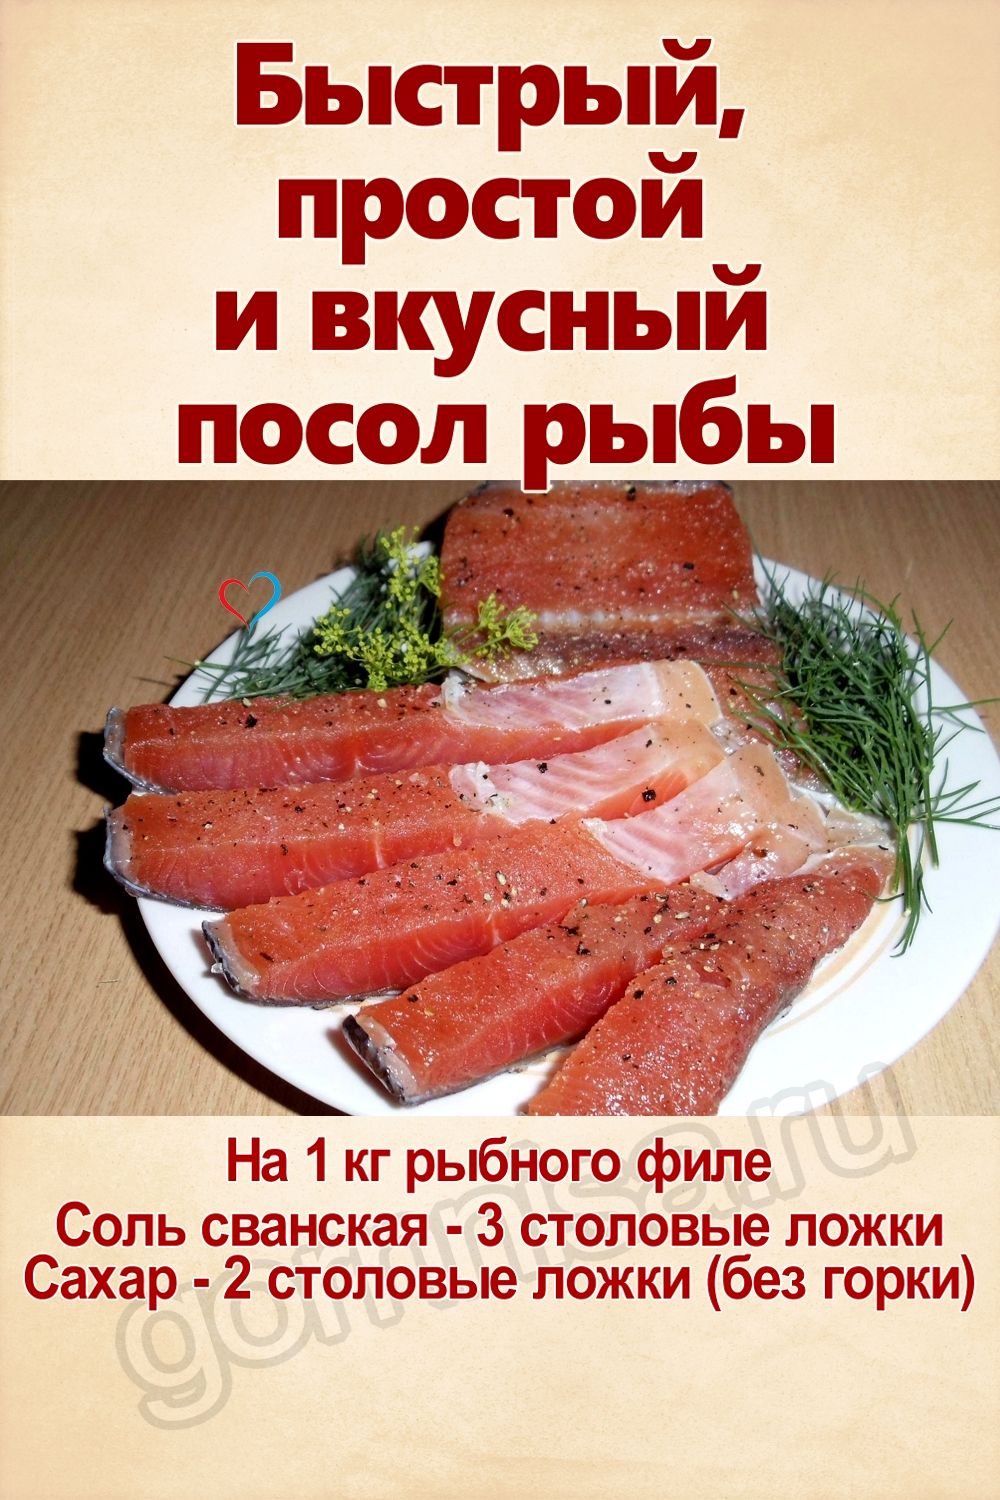 Рецепт недели - Быстрый, простой и вкусный посол рыбы